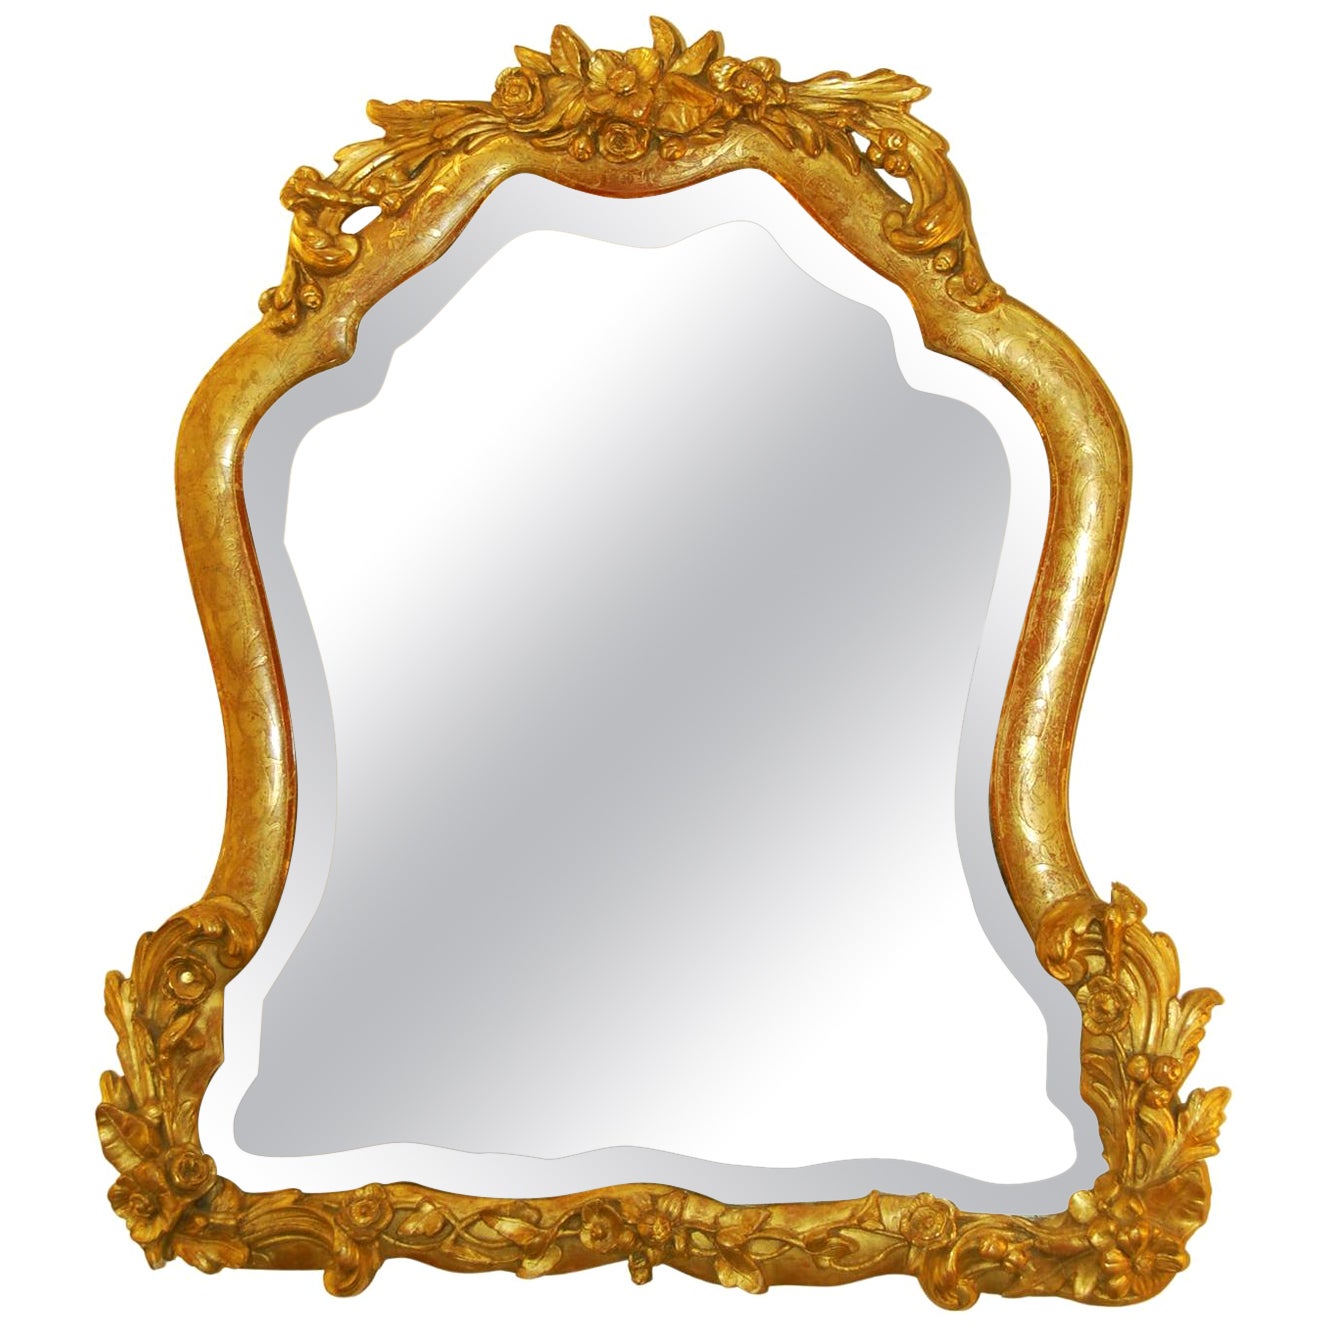 Rococo Revival More Mirrors